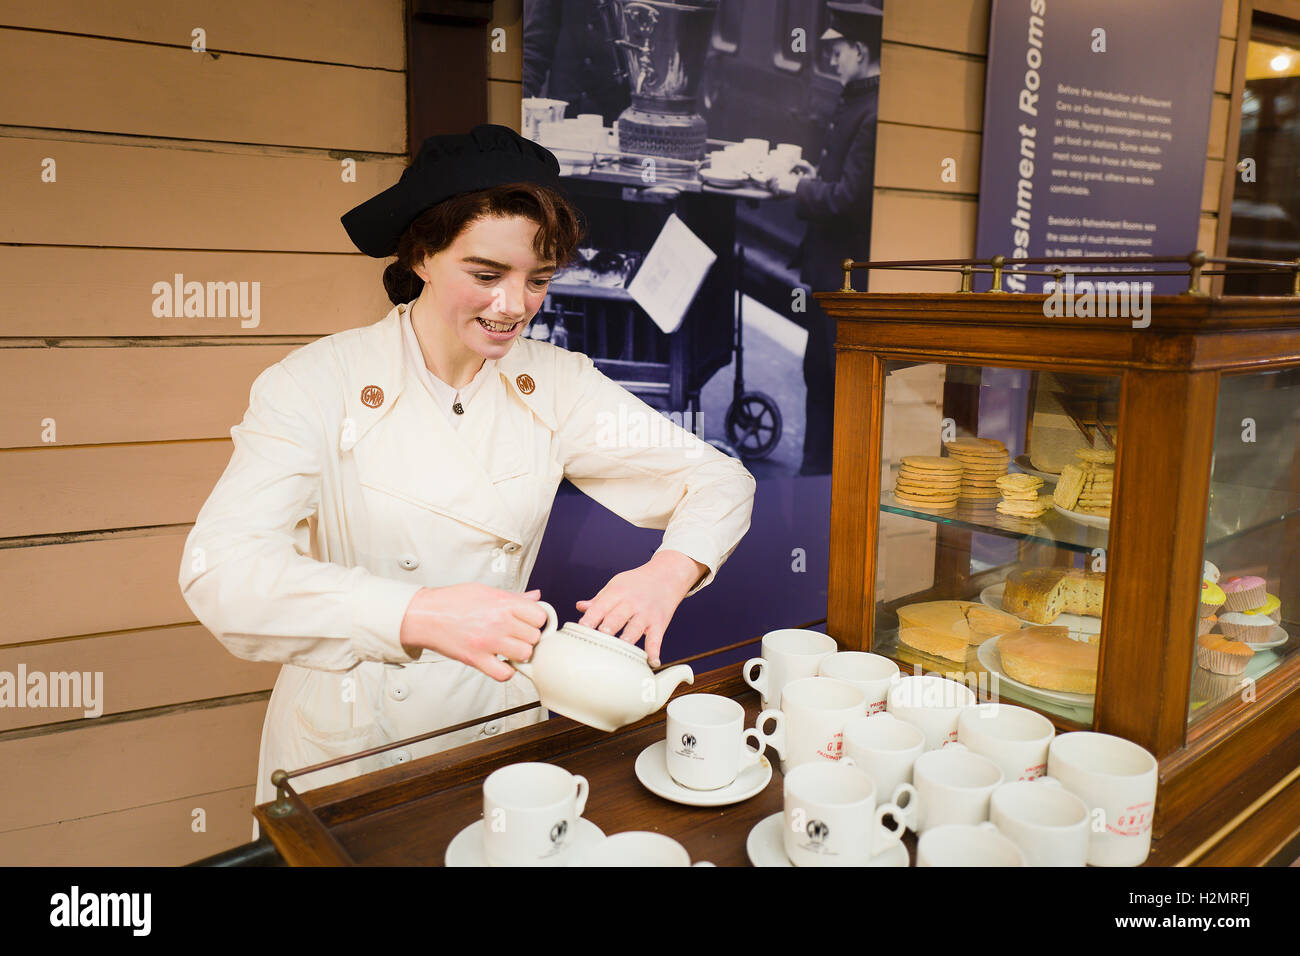 Rinfreschi lady versando una tazza di tè per mostrare come i rinfreschi erano serviti ai passeggeri ferroviari durante l'età del vapore Foto Stock